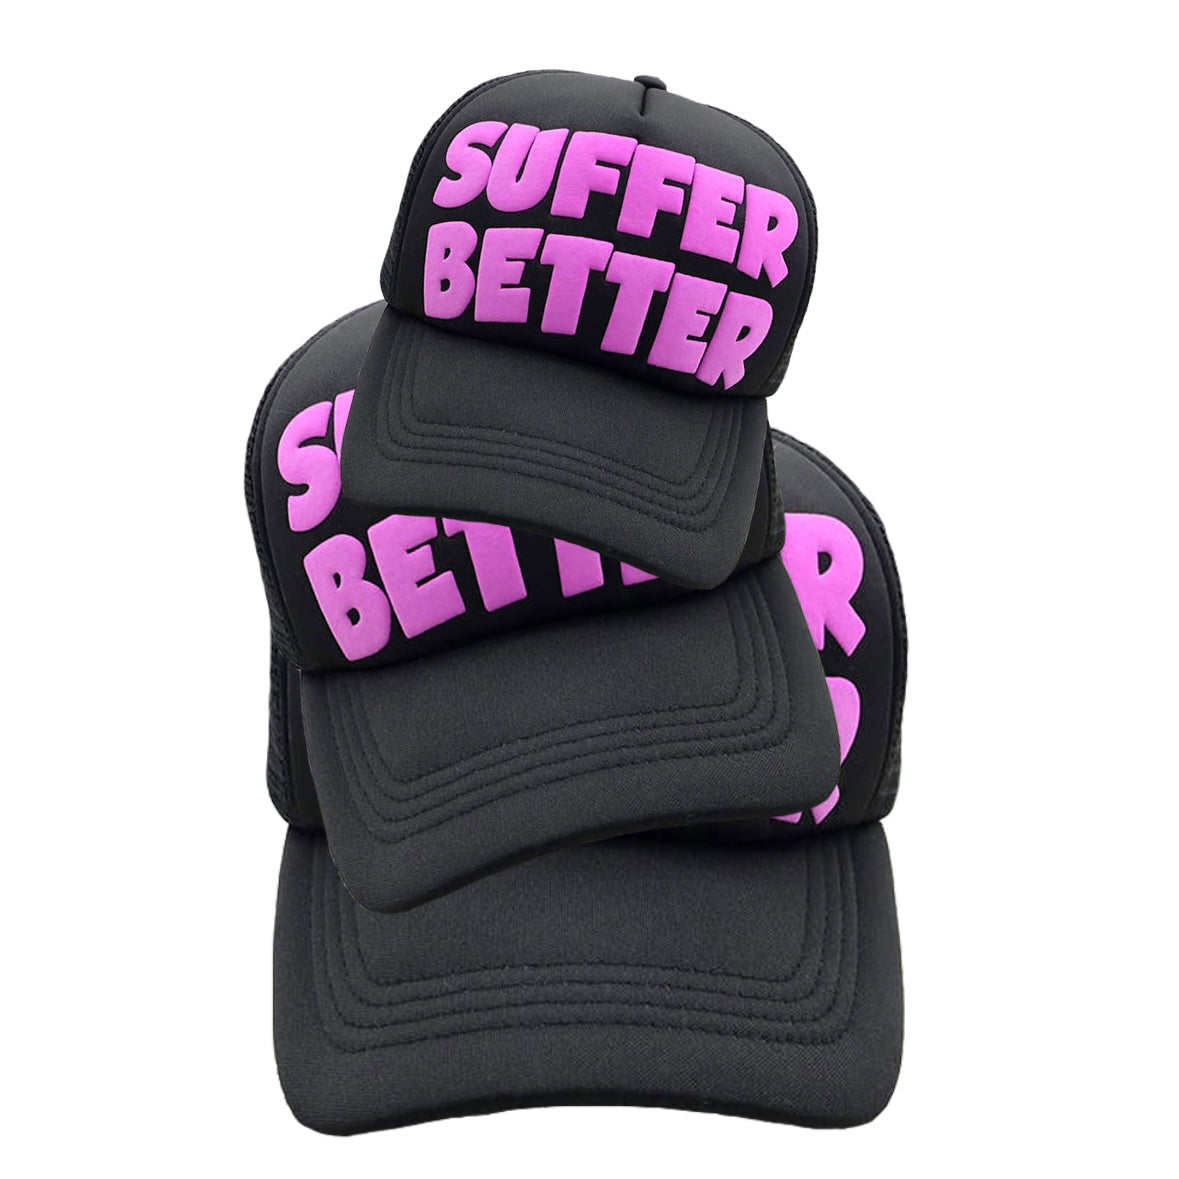 SUFFER BETTER HAT